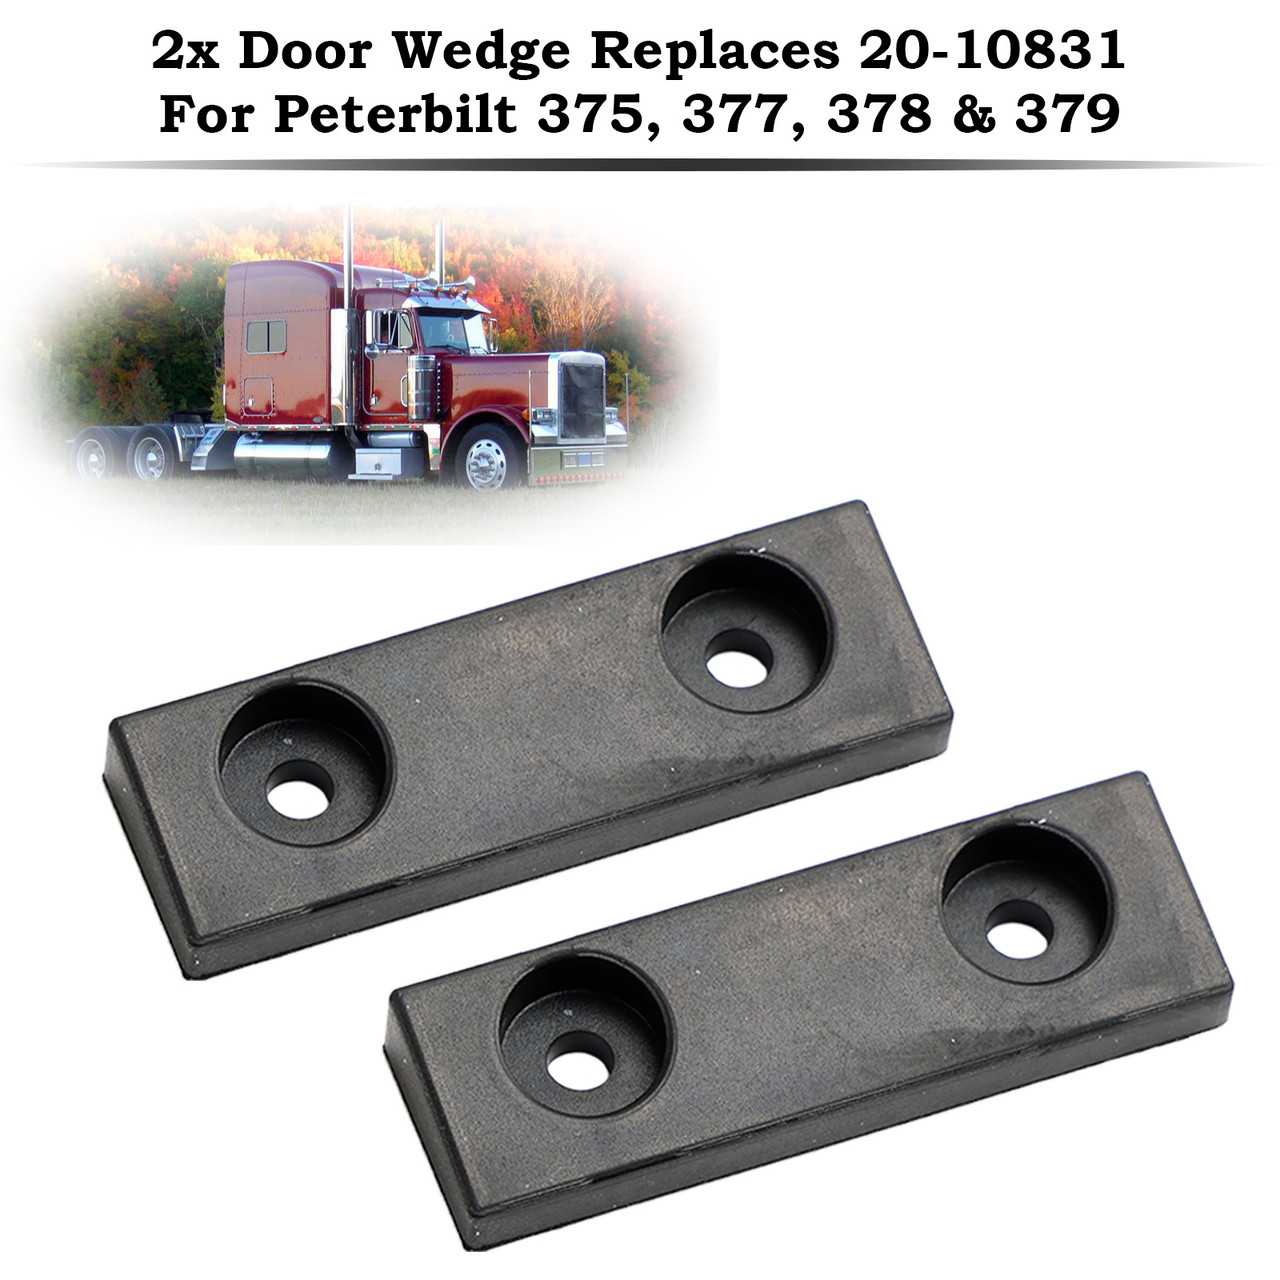 2x Door Wedge Replaces 20-10831 For Peterbilt 375 377 378 379 Trucks Trailers